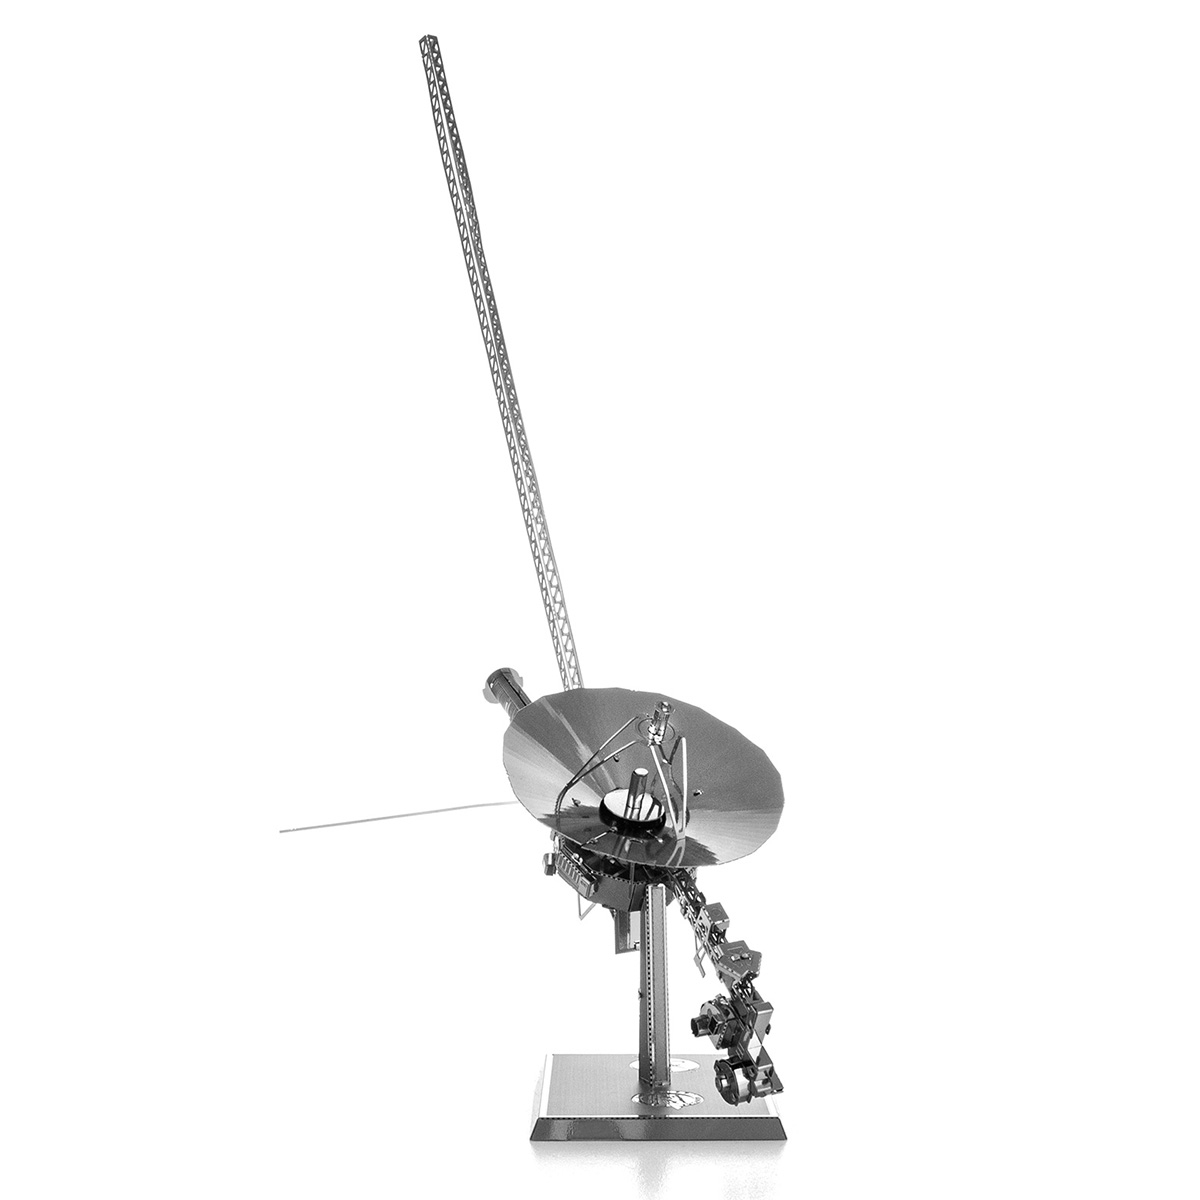 Fascinations Metal Earth Voyager Spacecraft 3D Laser Cut Steel Metal Model Kit 